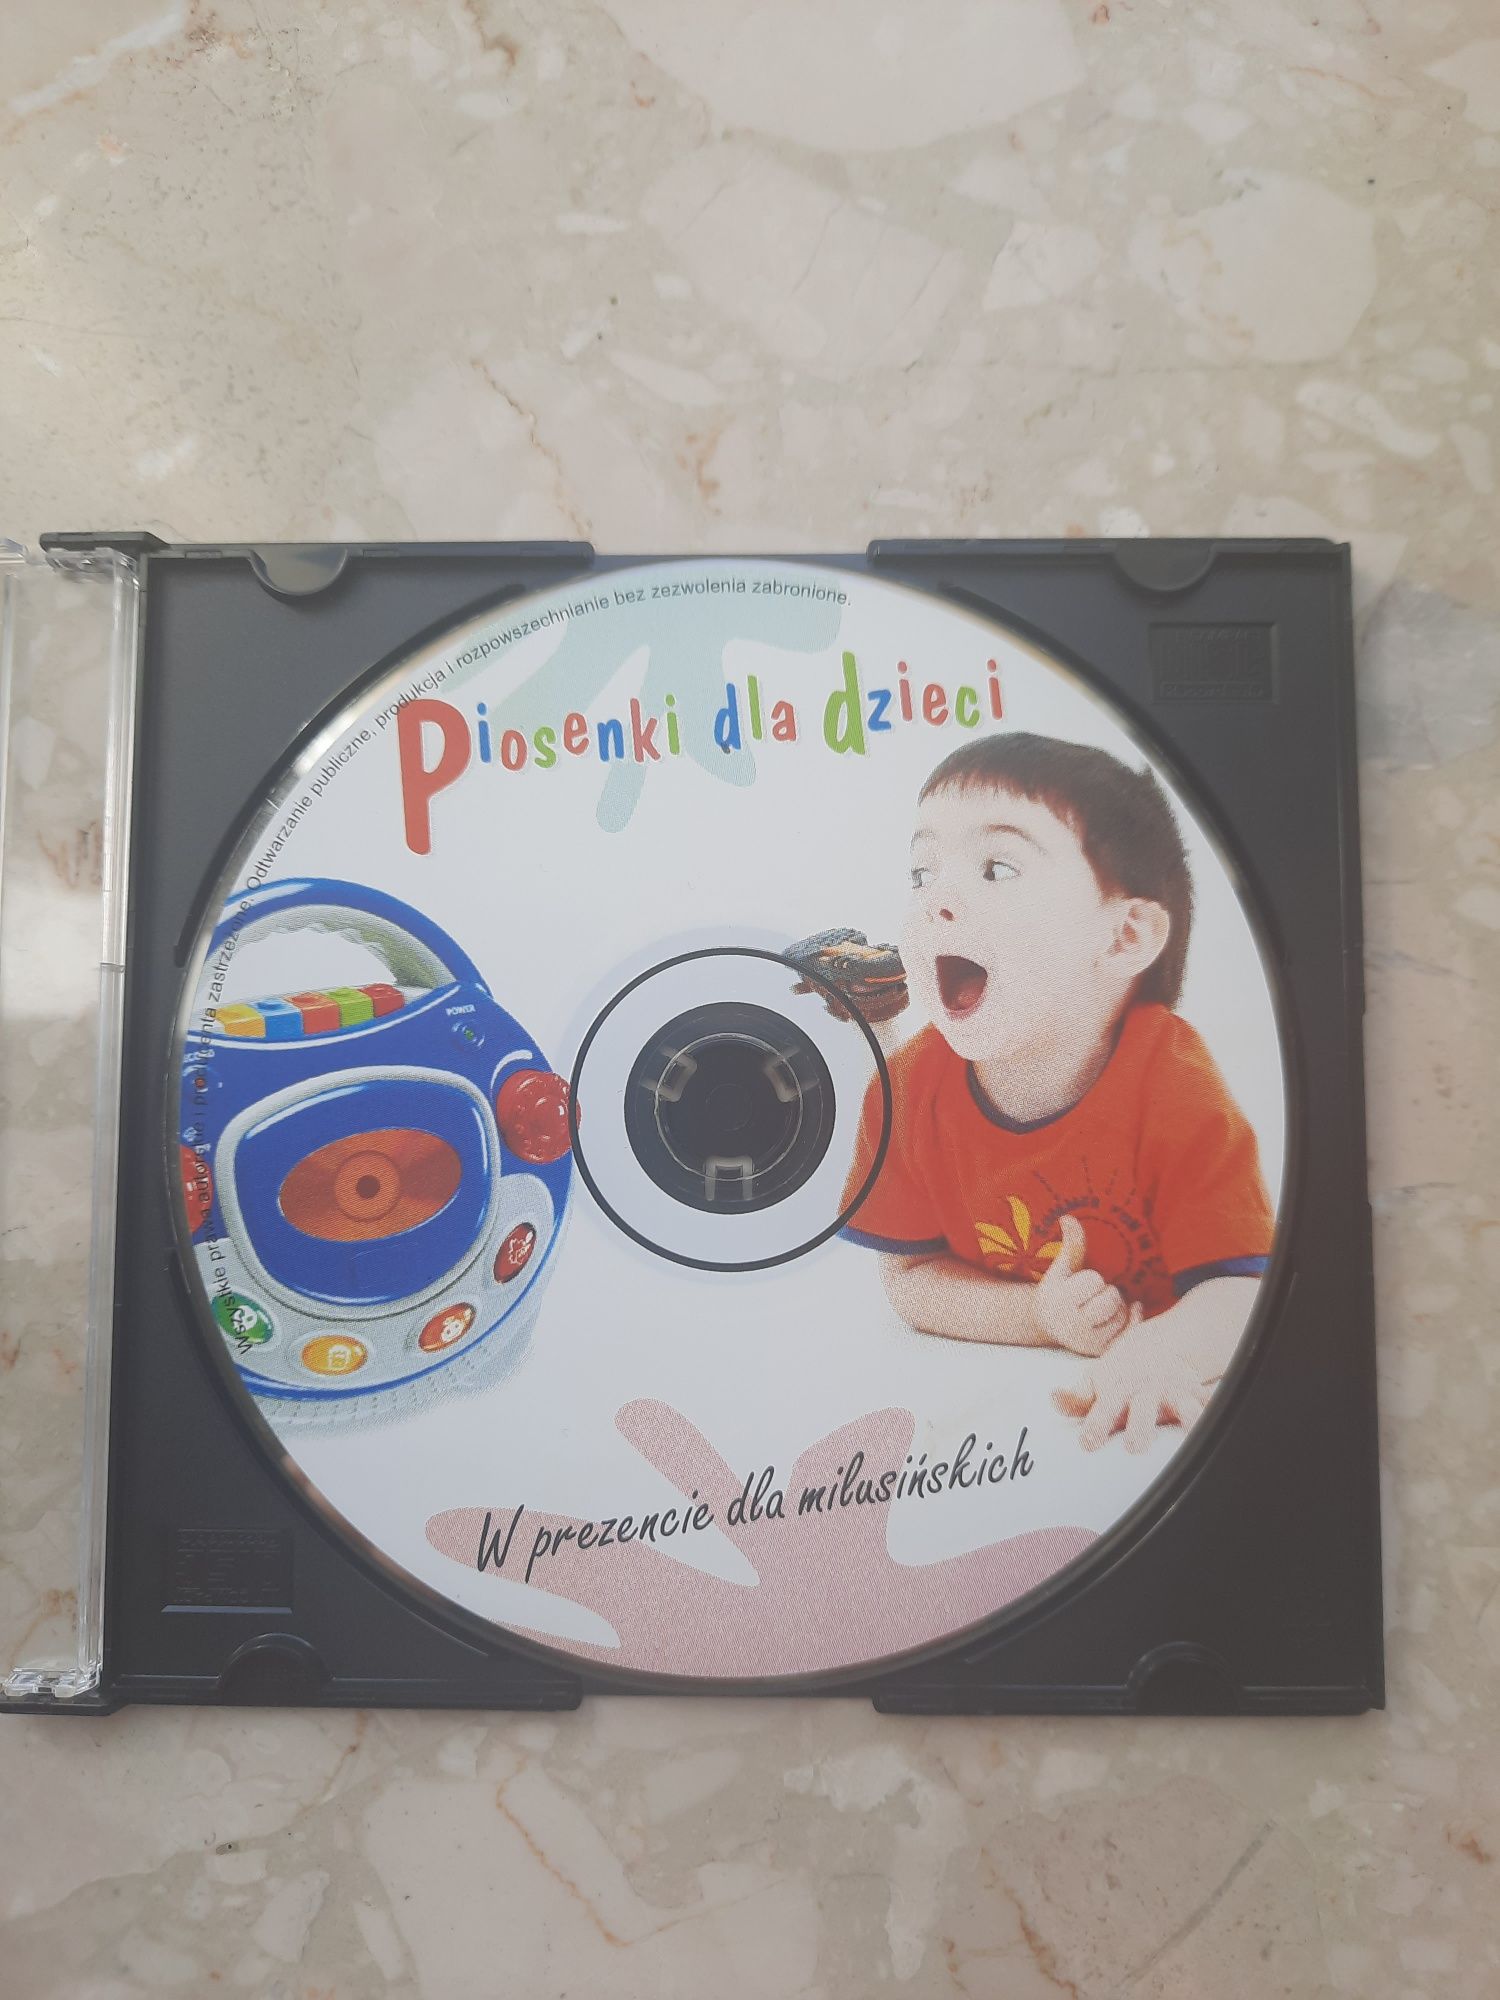 Piosenki dla dzieci Płyta CD